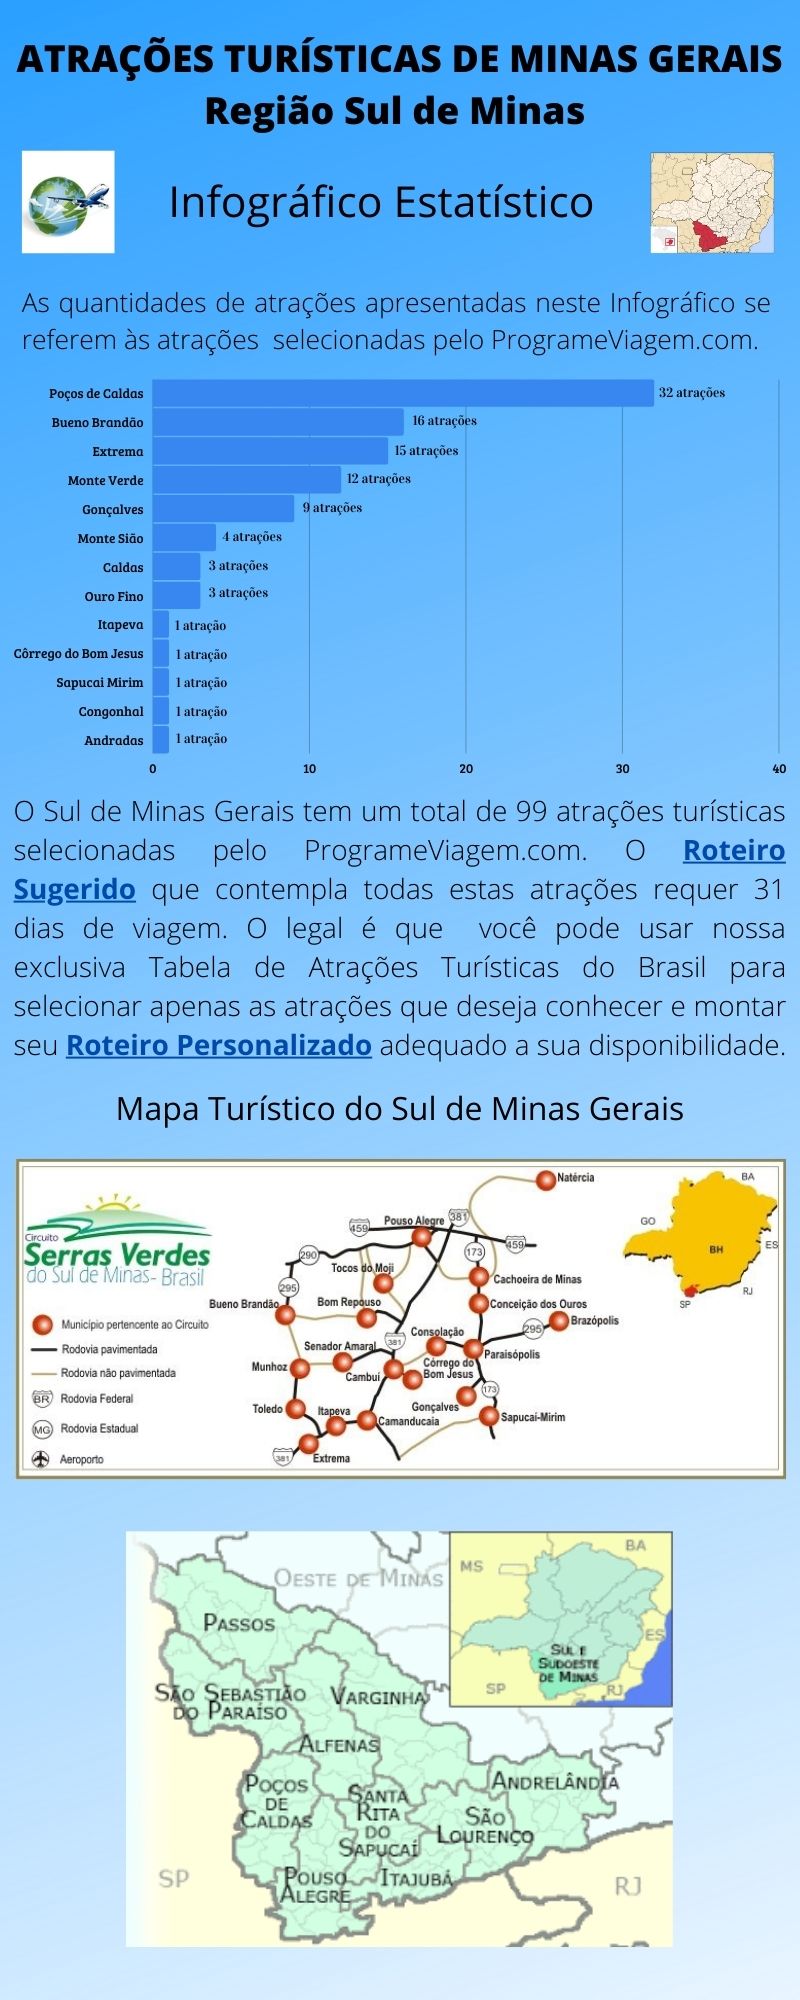 Infográfico Atrações Turísticas de Minas Gerais (Sul de Minas)